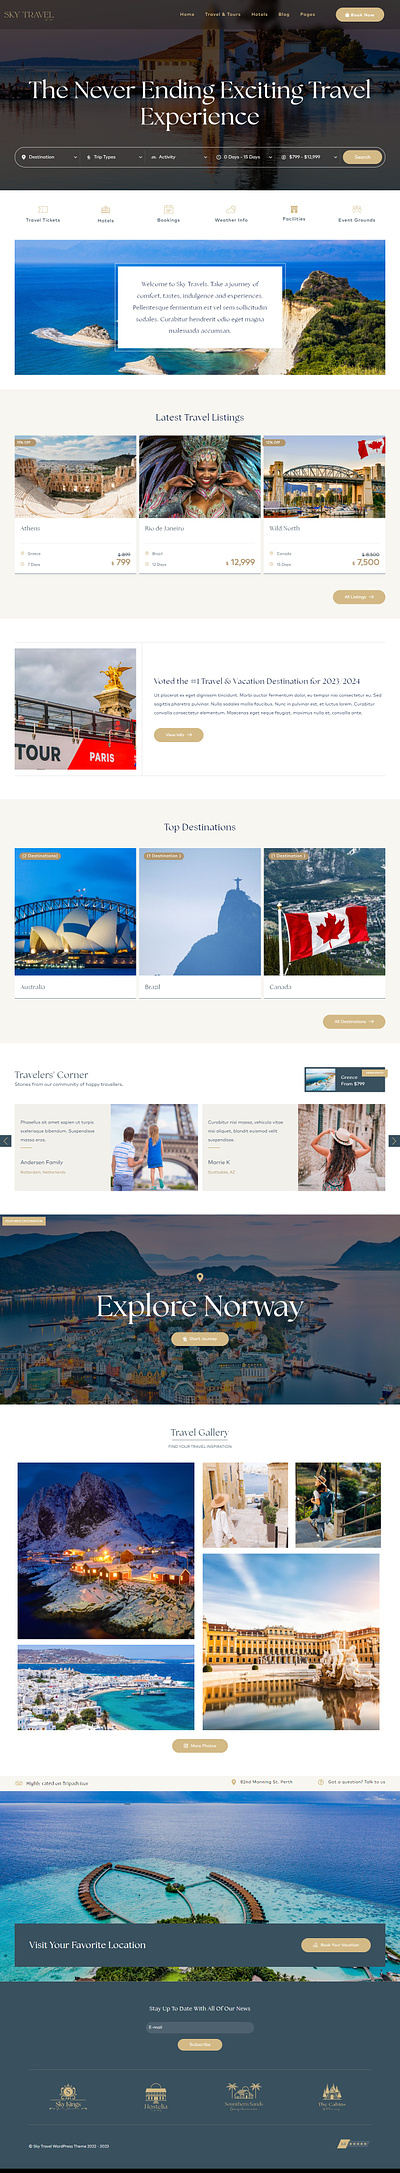 Sky Tours & Travel WordPress Theme design themes ui ux website wordpres themes wordpress